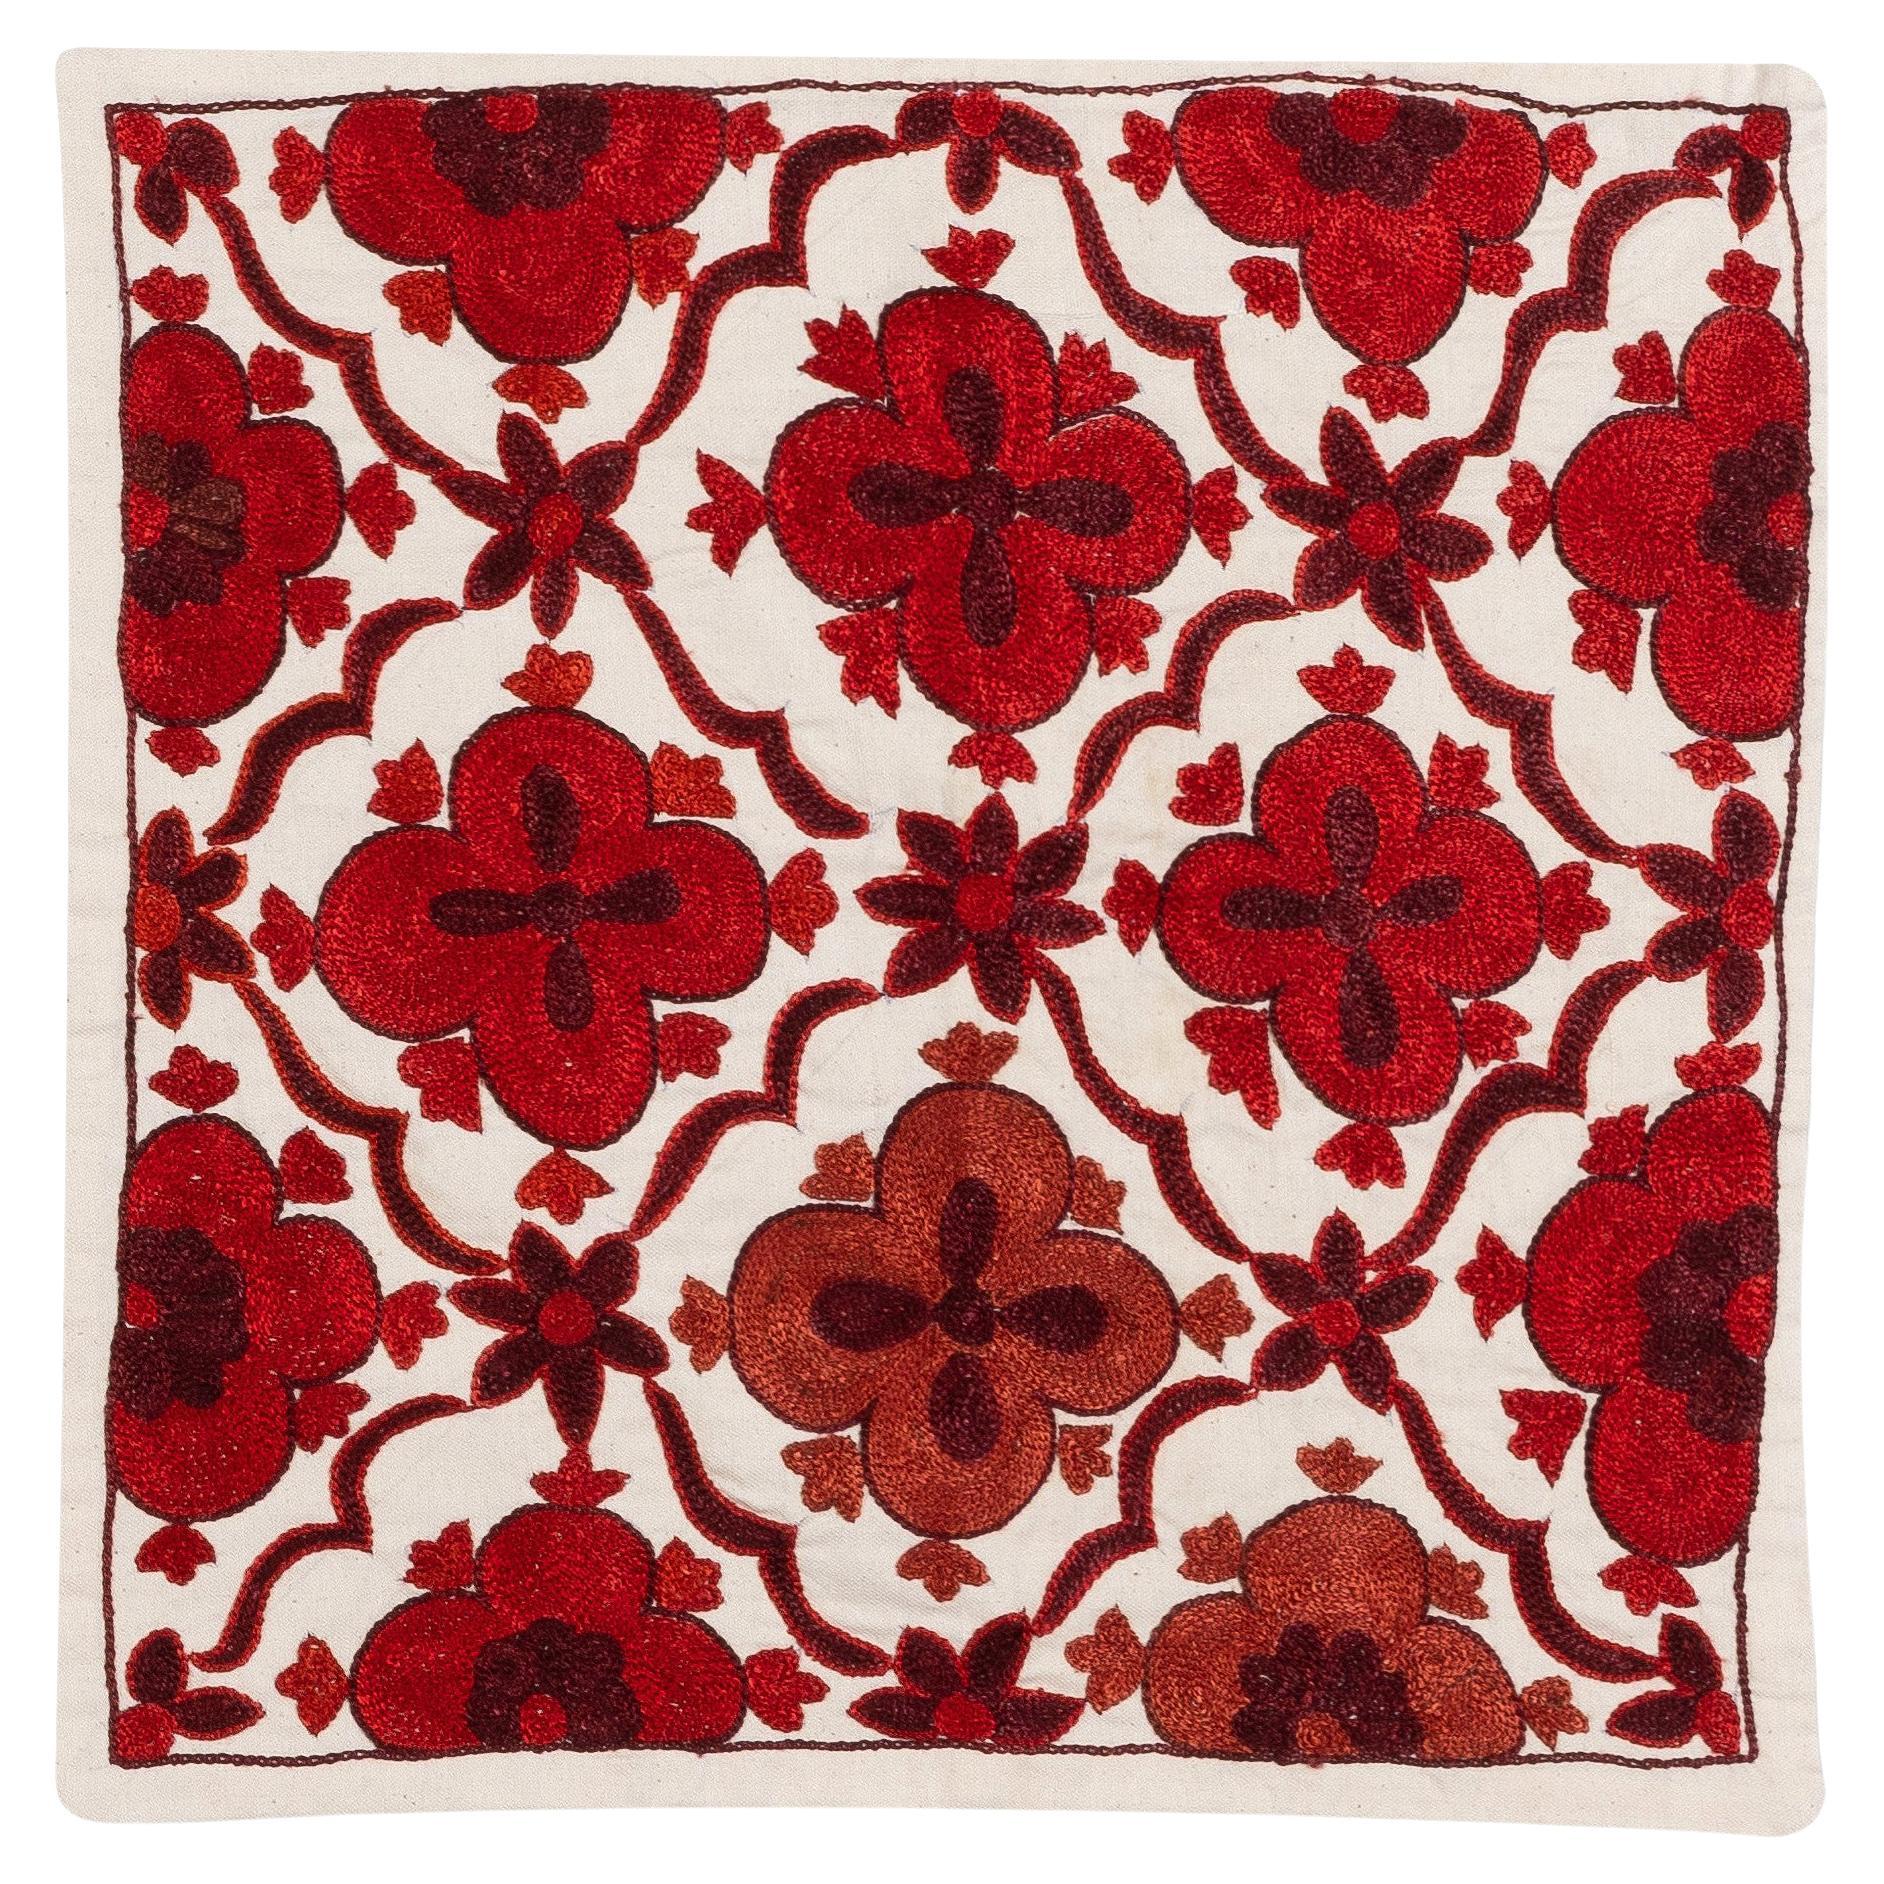 Revêtement de coussin carré Suzani en soie ouzbeke brodée à la main en ivoire et rouge de 43,18 cm x 43,18 cm